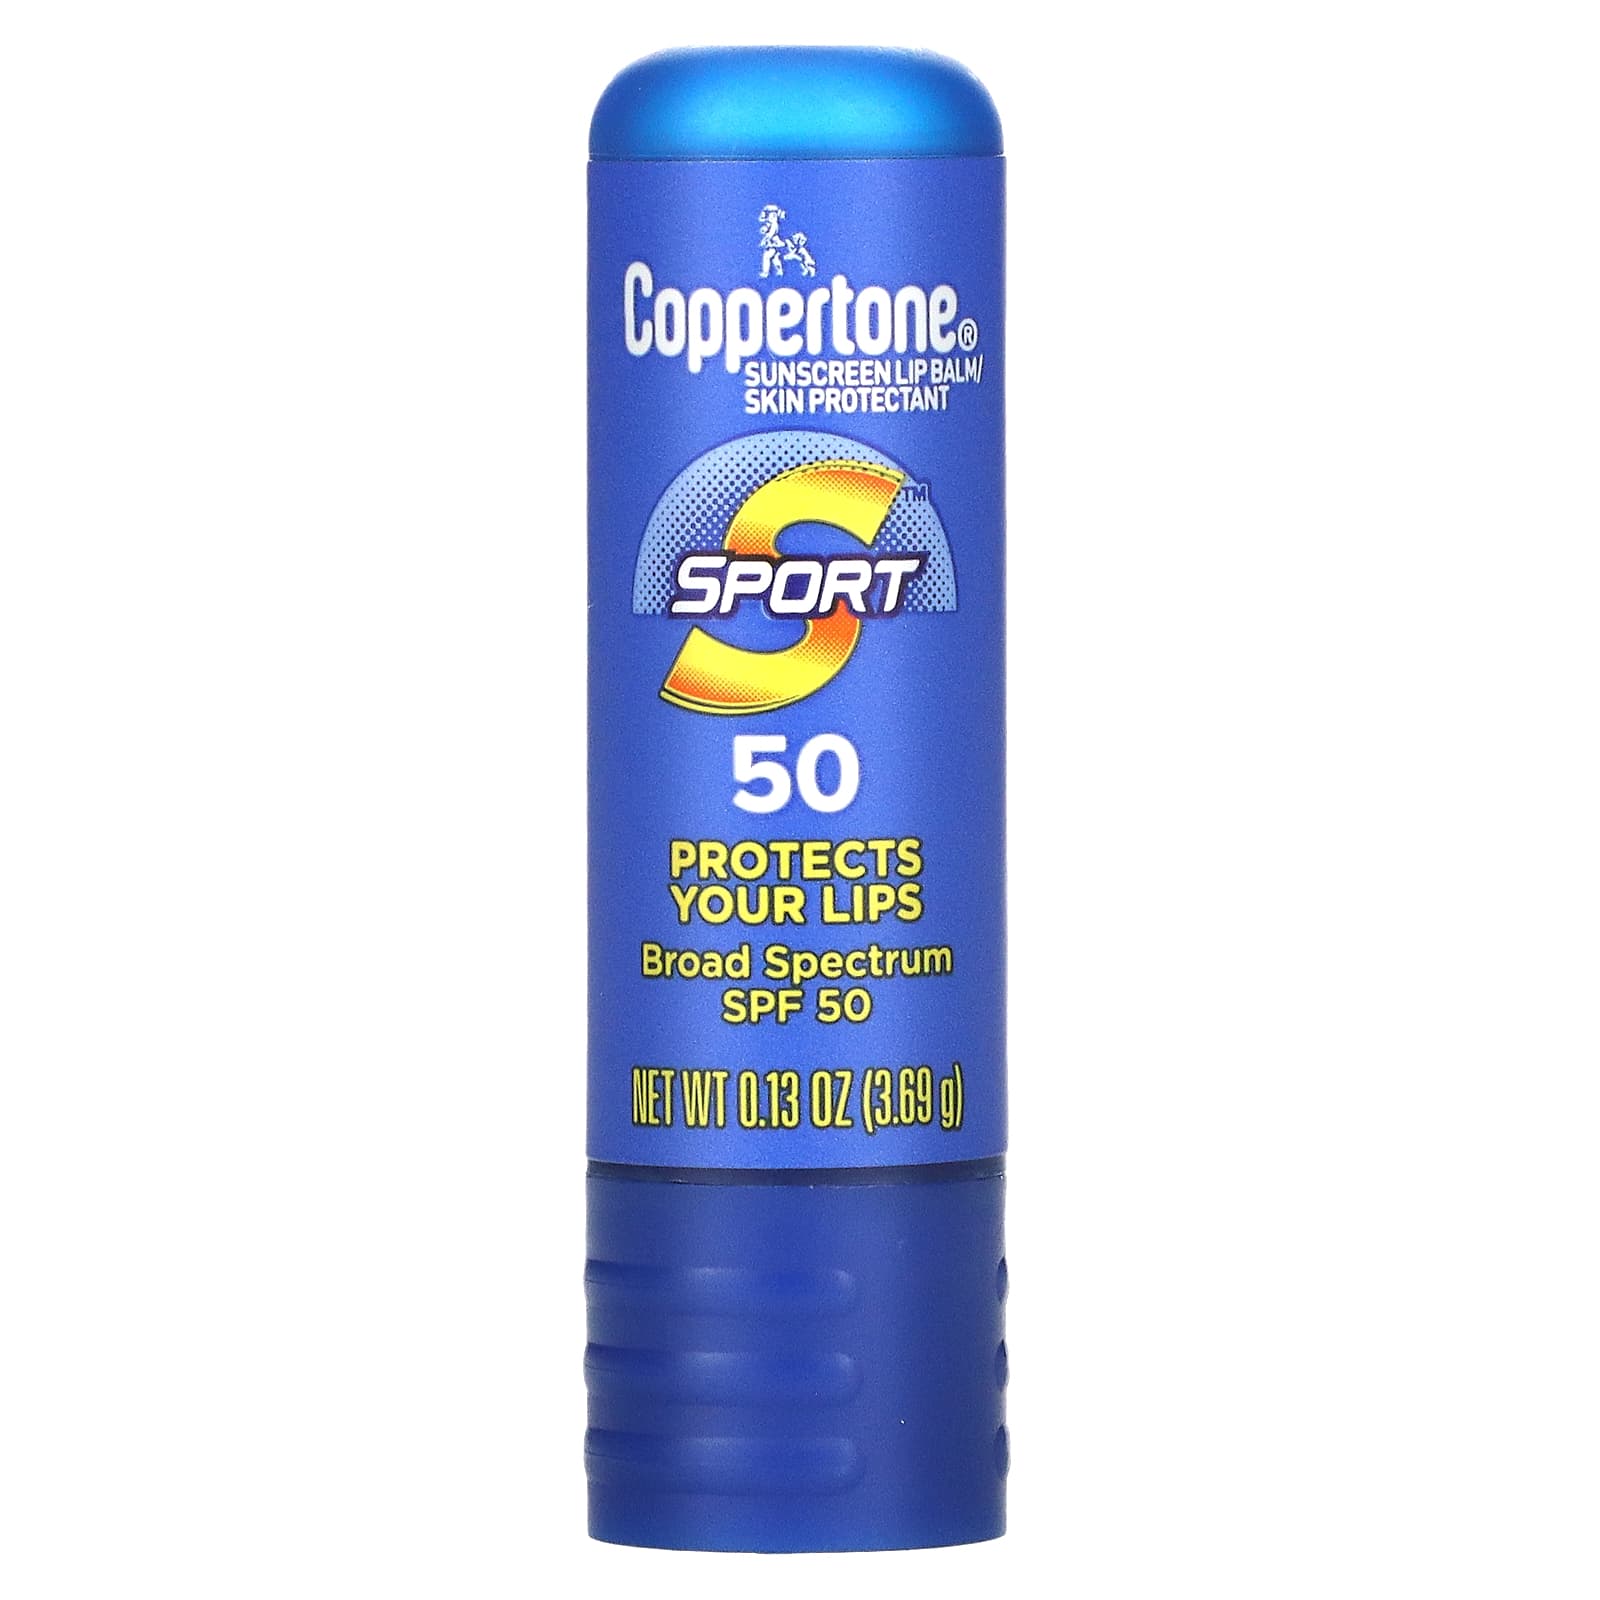 Солнцезащитный Бальзам Coppertone SPF 50 для губ, 3,69 г coppertone sport солнцезащитный бальзам для губ spf 50 3 69 г 0 13 унции